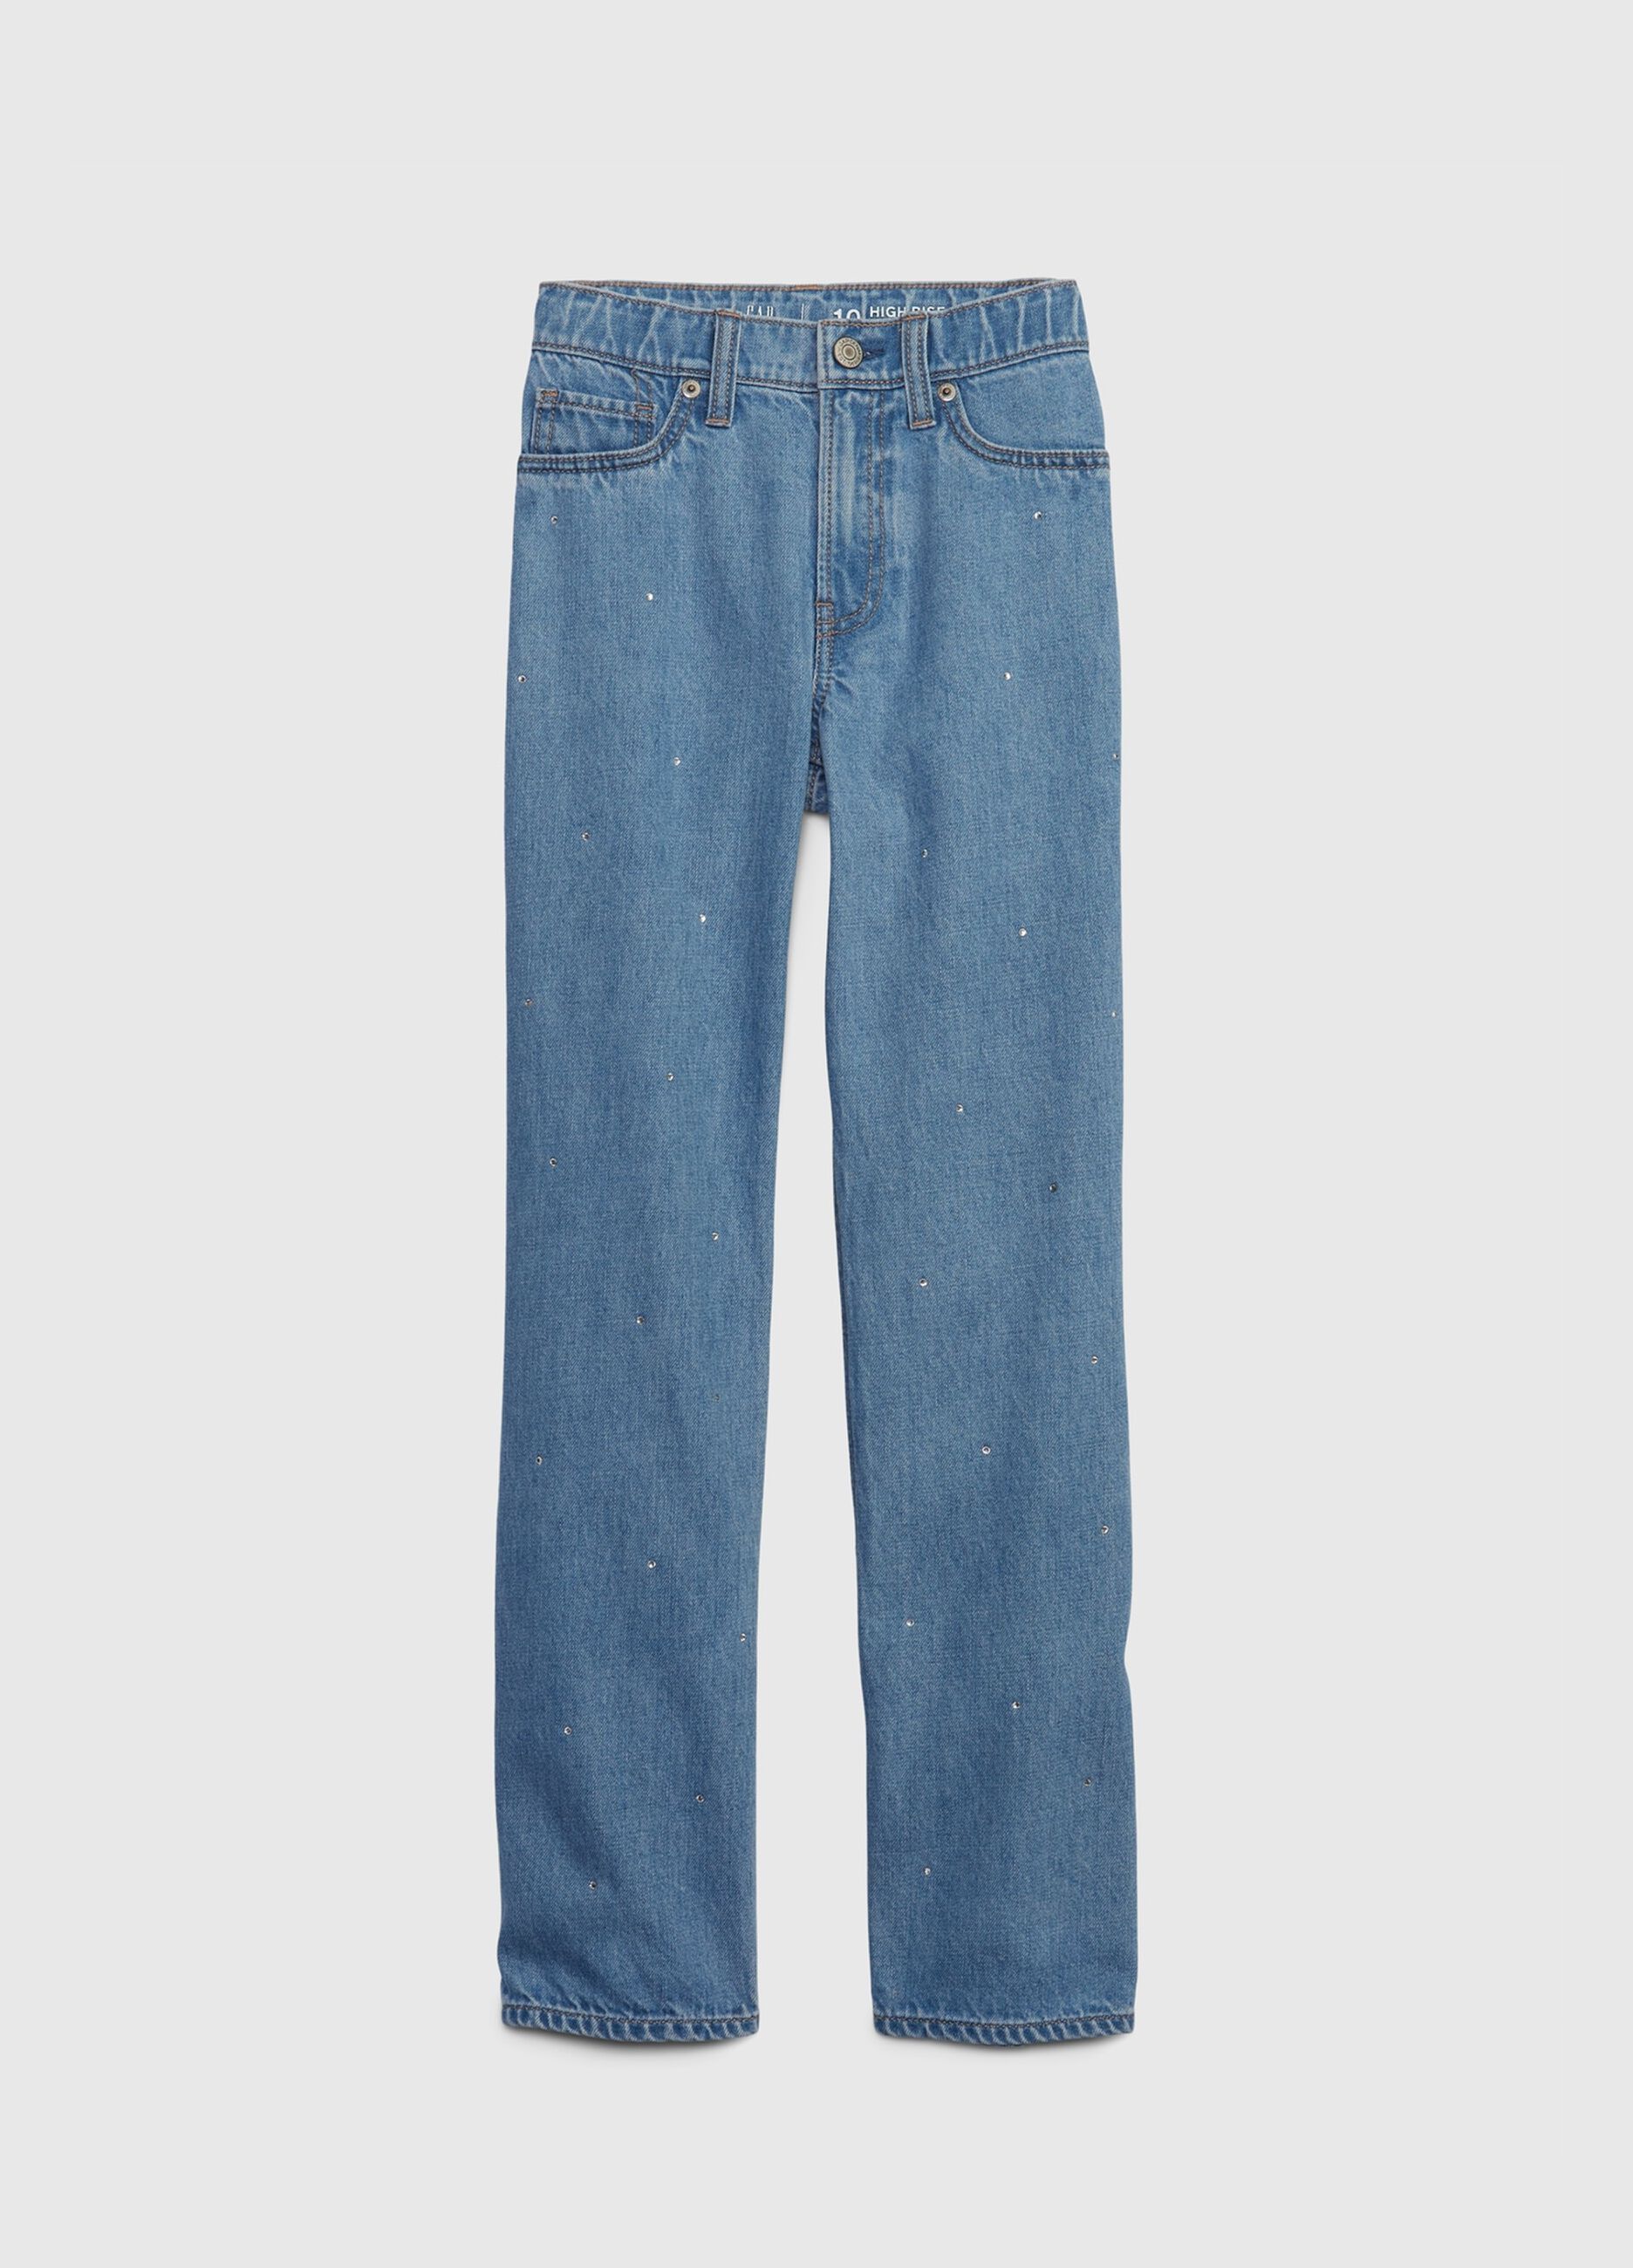 Loose-fit, high-waist jeans with diamanté